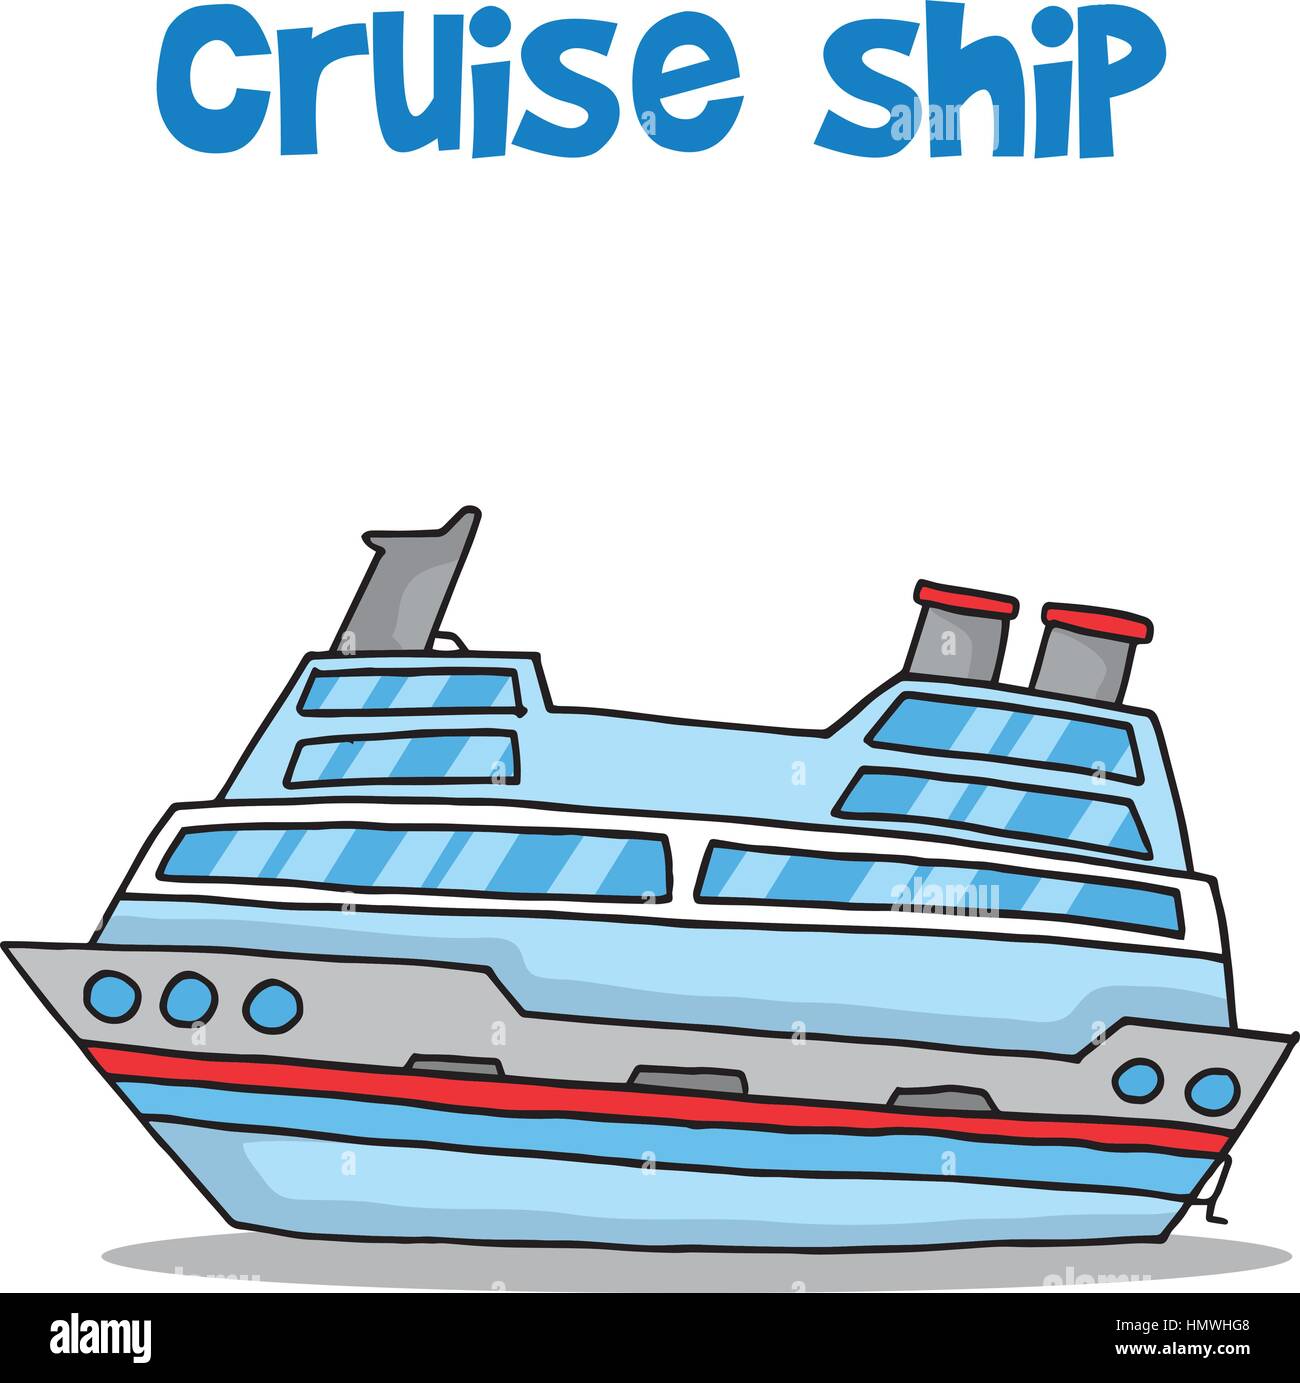 Cartoon of cruise ship vector Stock Vector Image & Art - Alamy